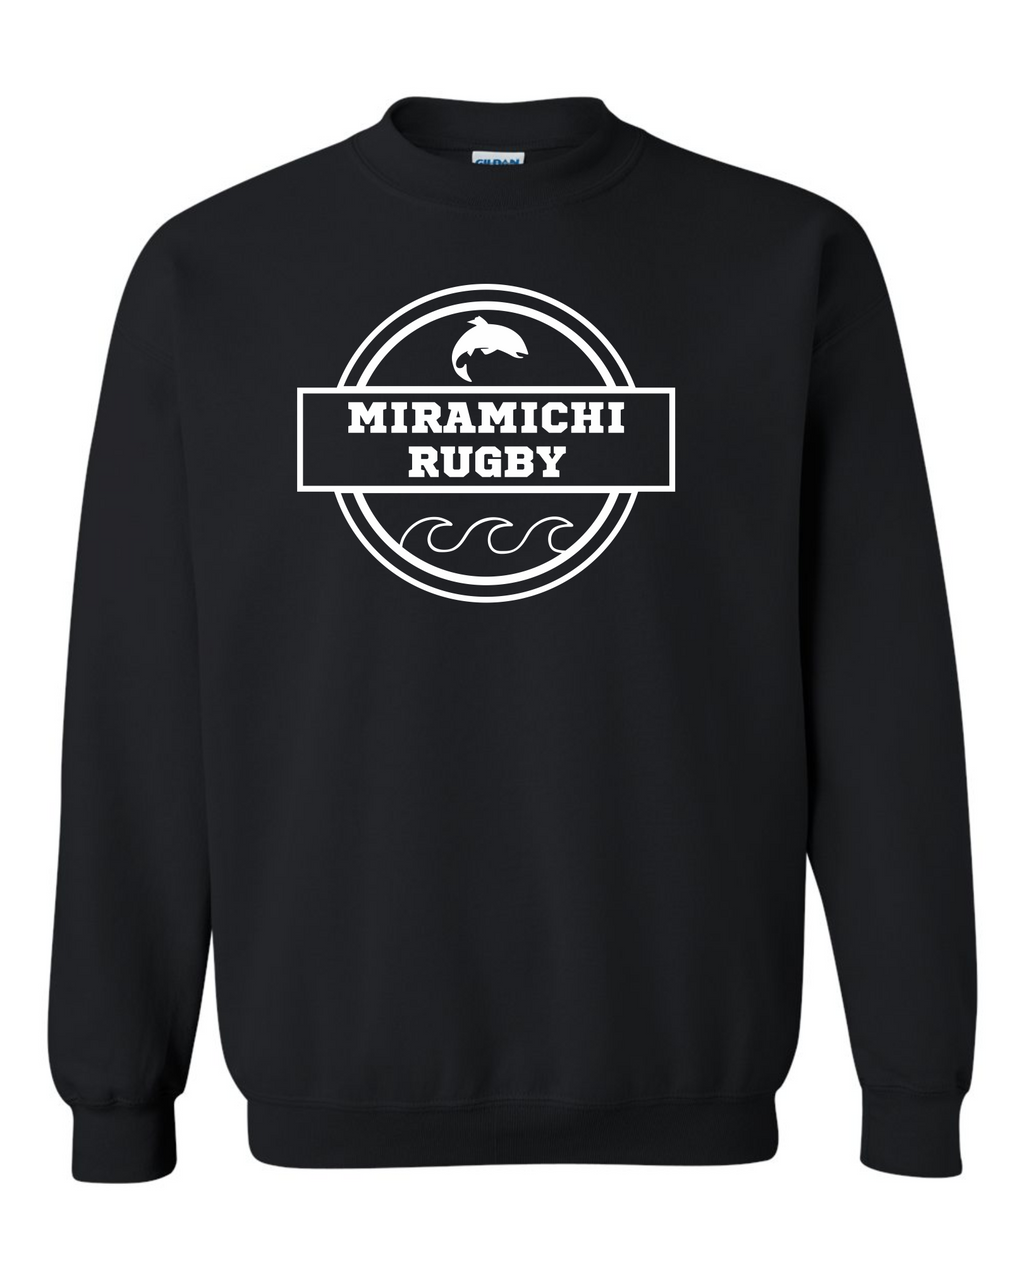 Miramichi Rugby - Black - Sweatshirt